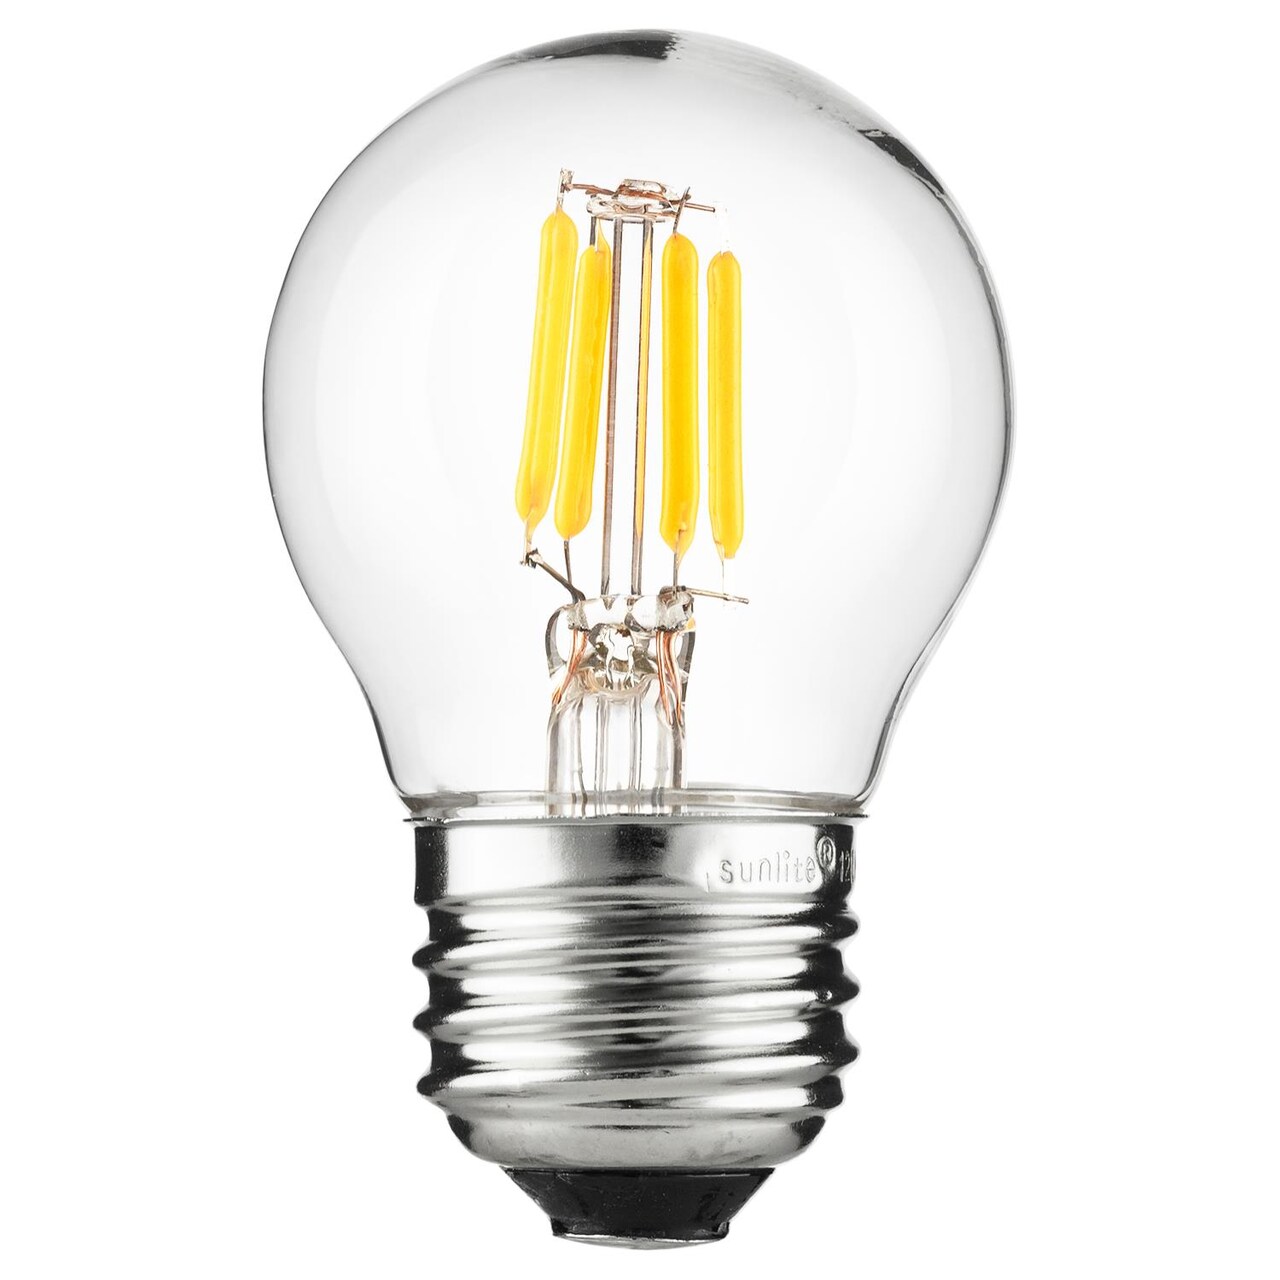 A19 LED Bulb, 3W, 250 Lumens